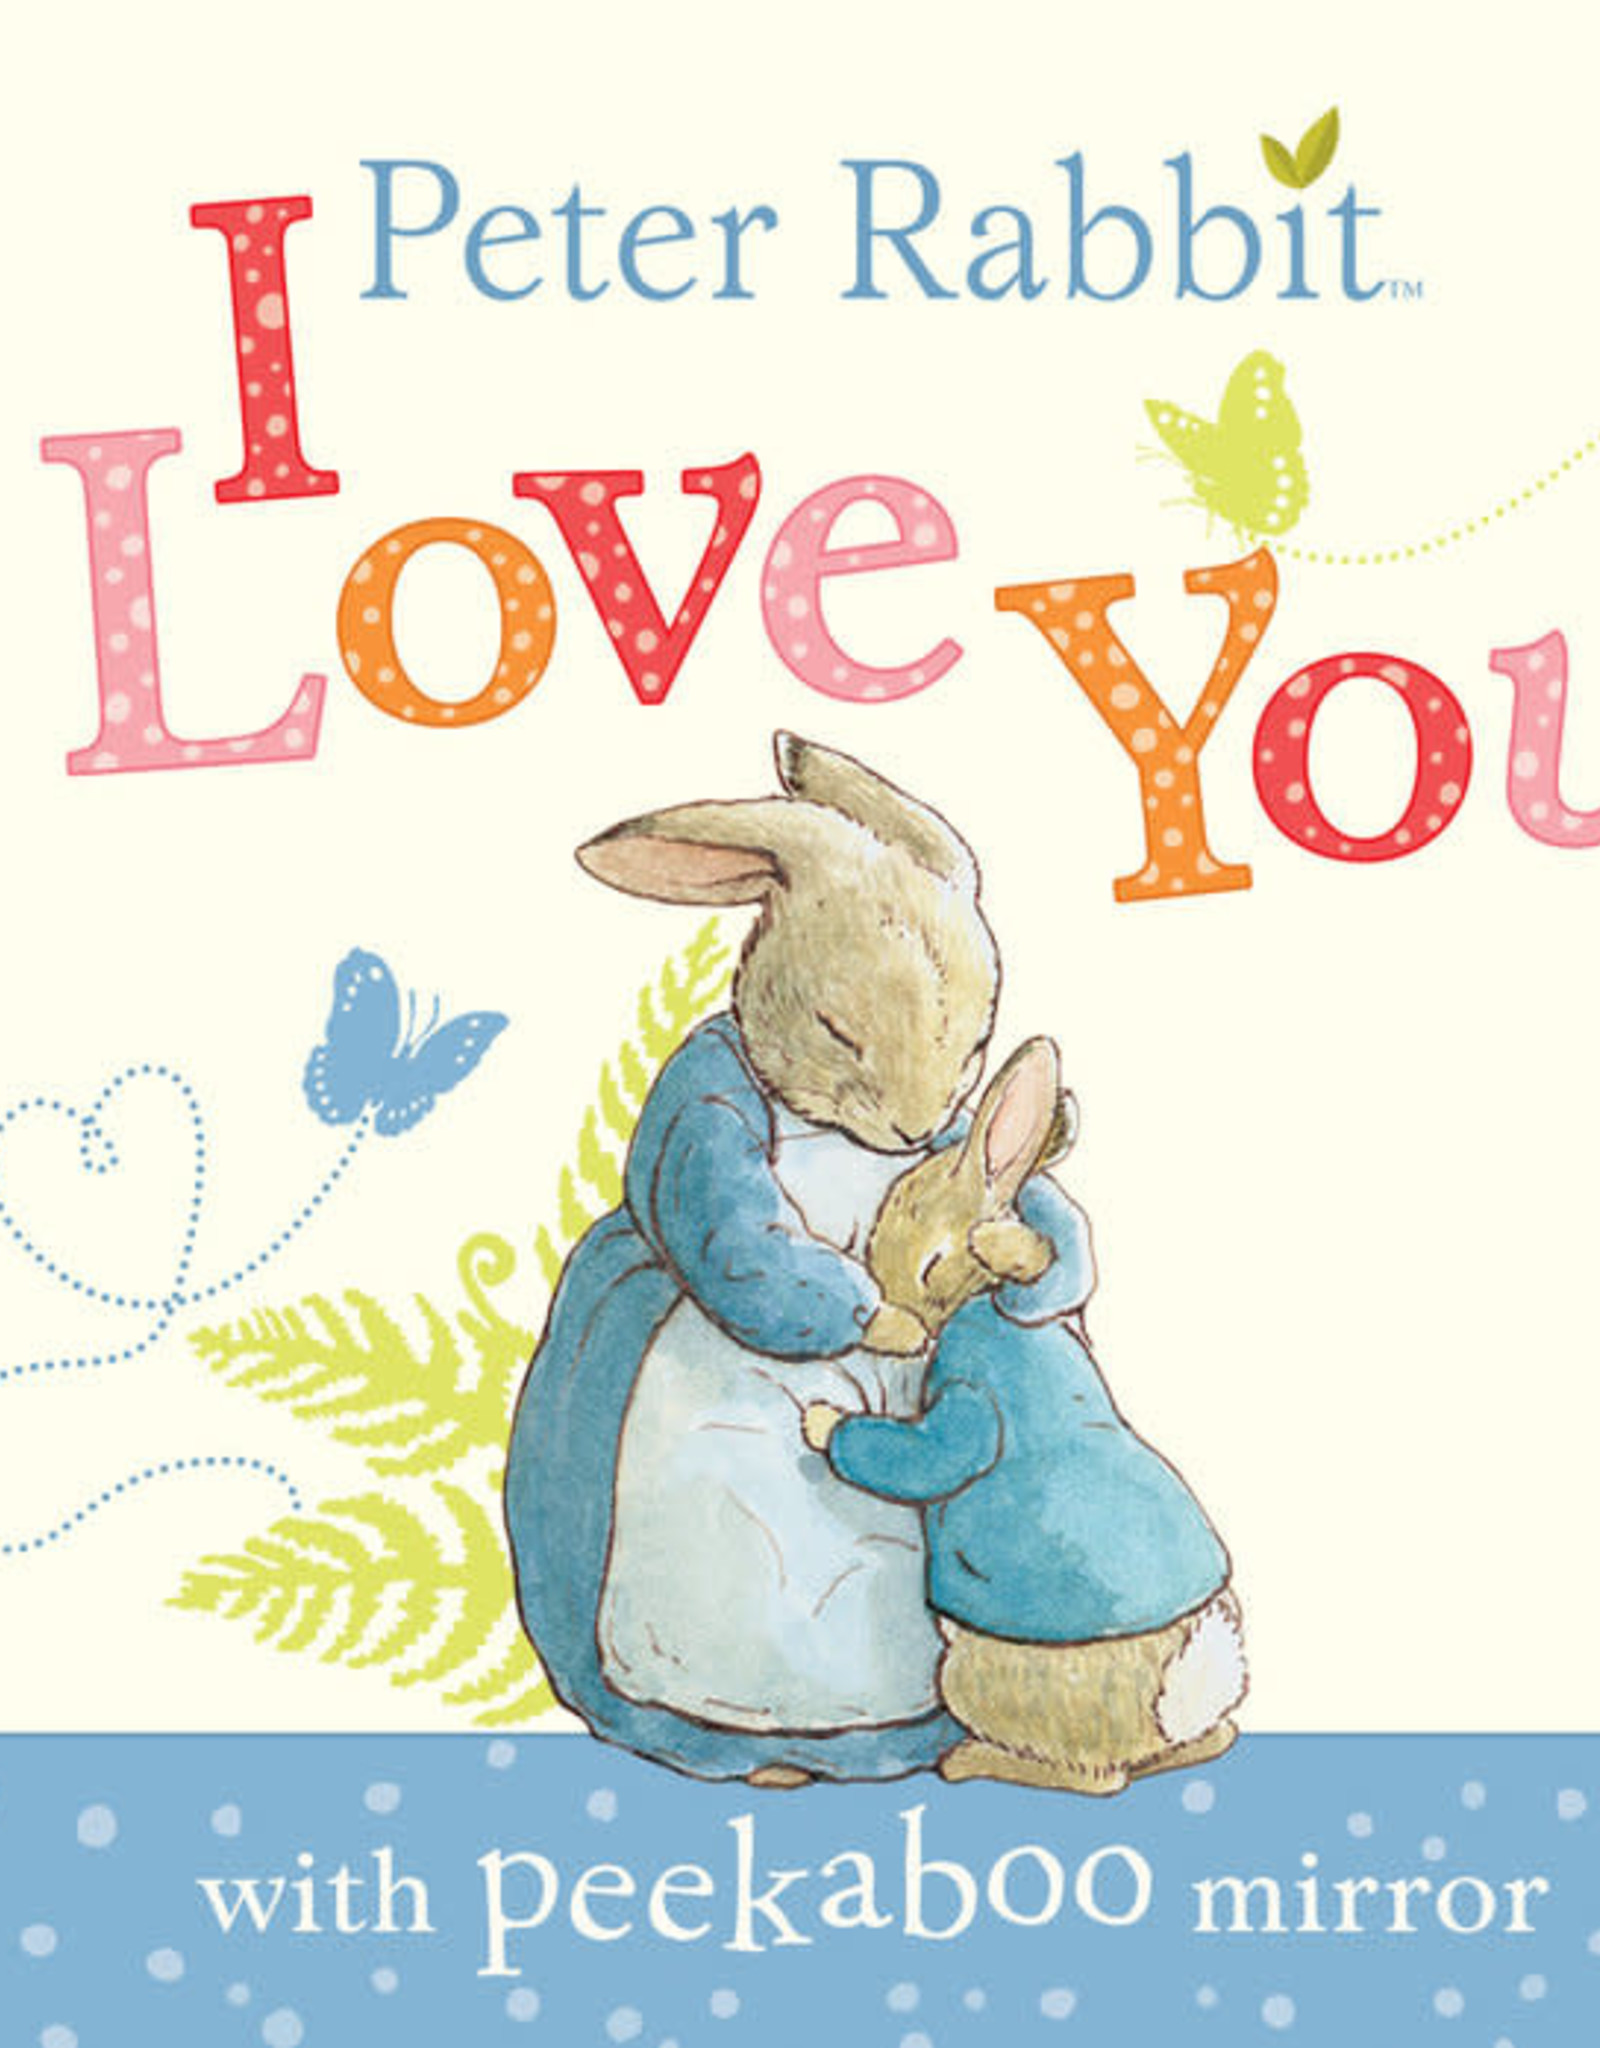 Penguin Random House !!BB Peter Rabbit I Love You